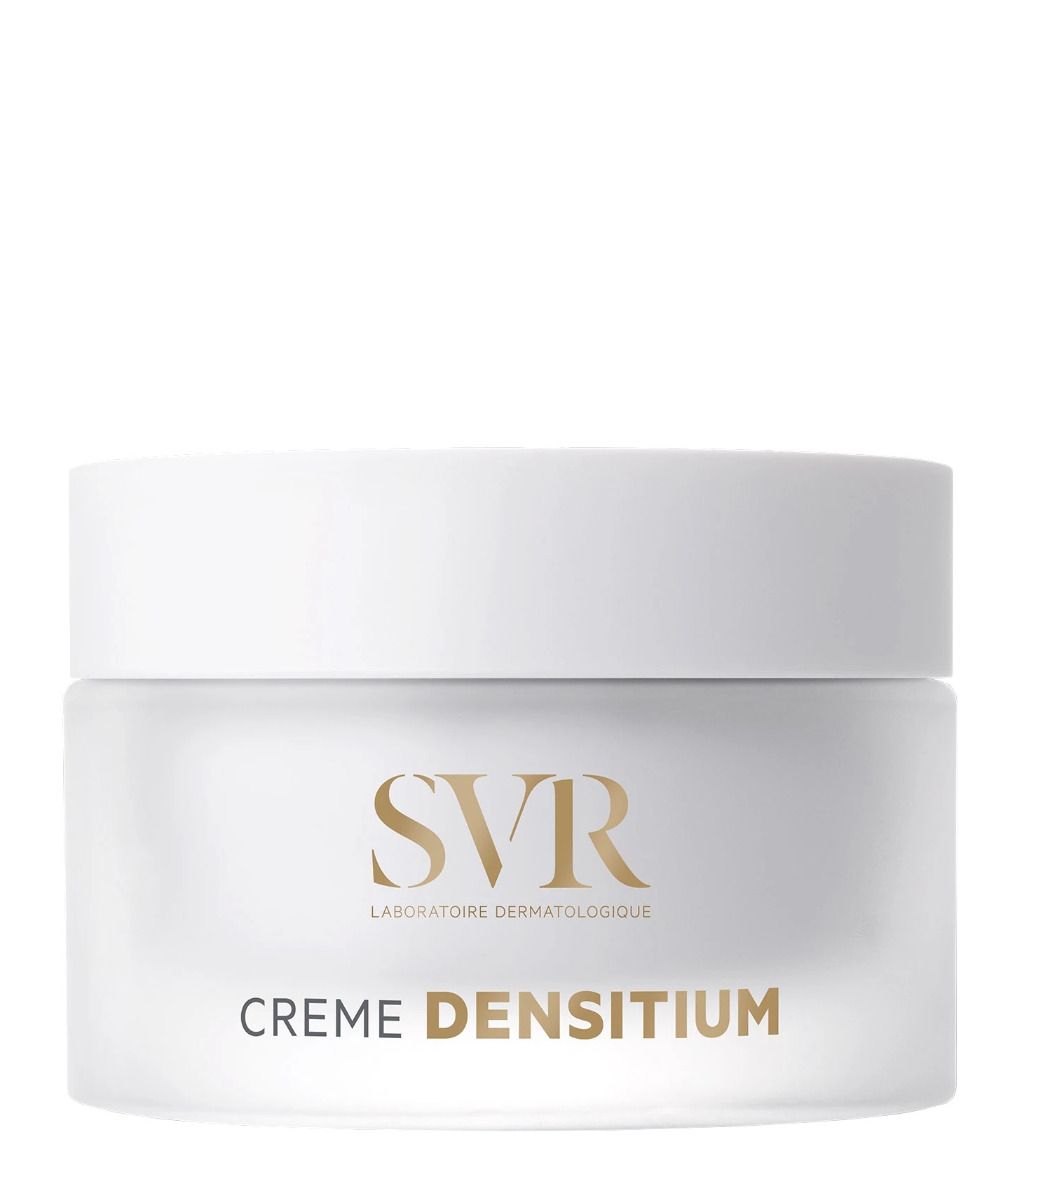 SVR Densitium Creme крем для лица, 50 ml